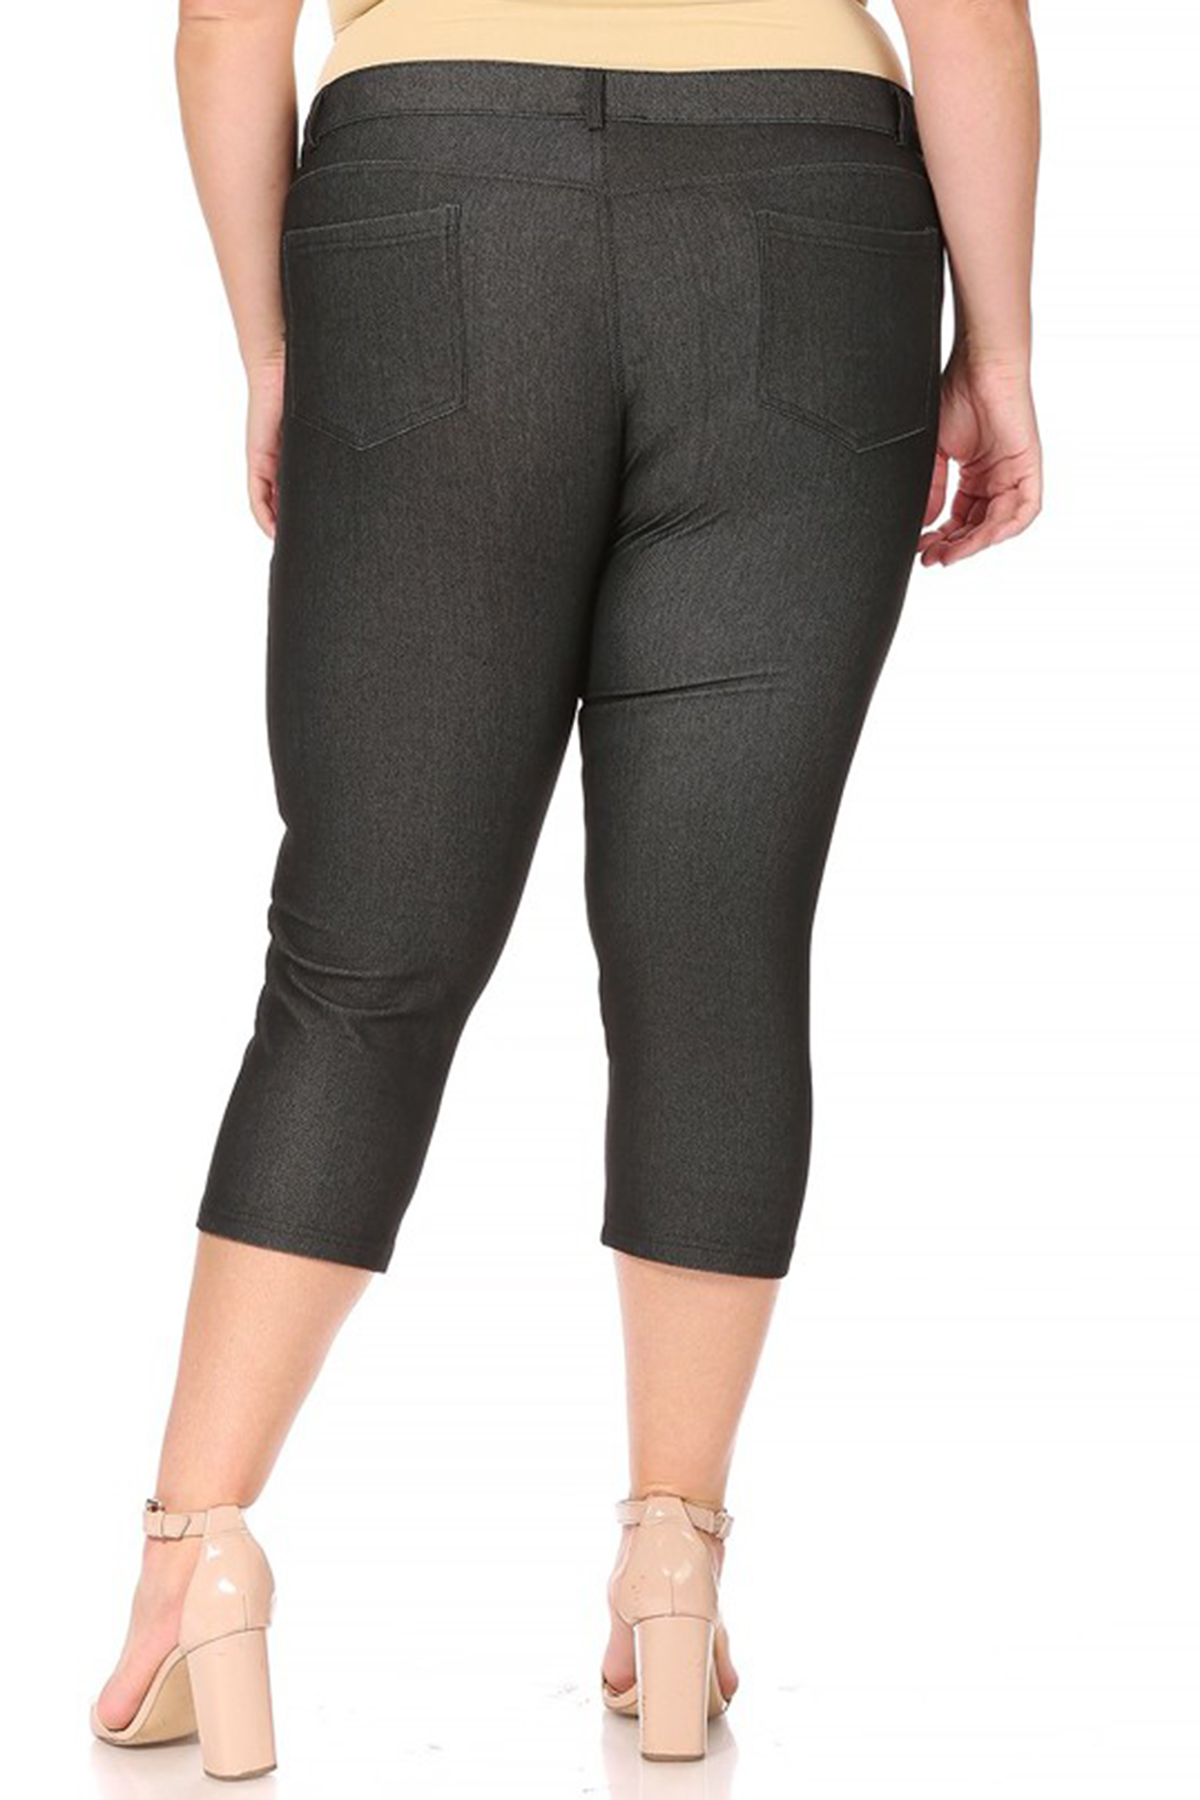 Moa Collection Women's Plus Size Casual Comfy Slim Pocket Jeans Capri Pants